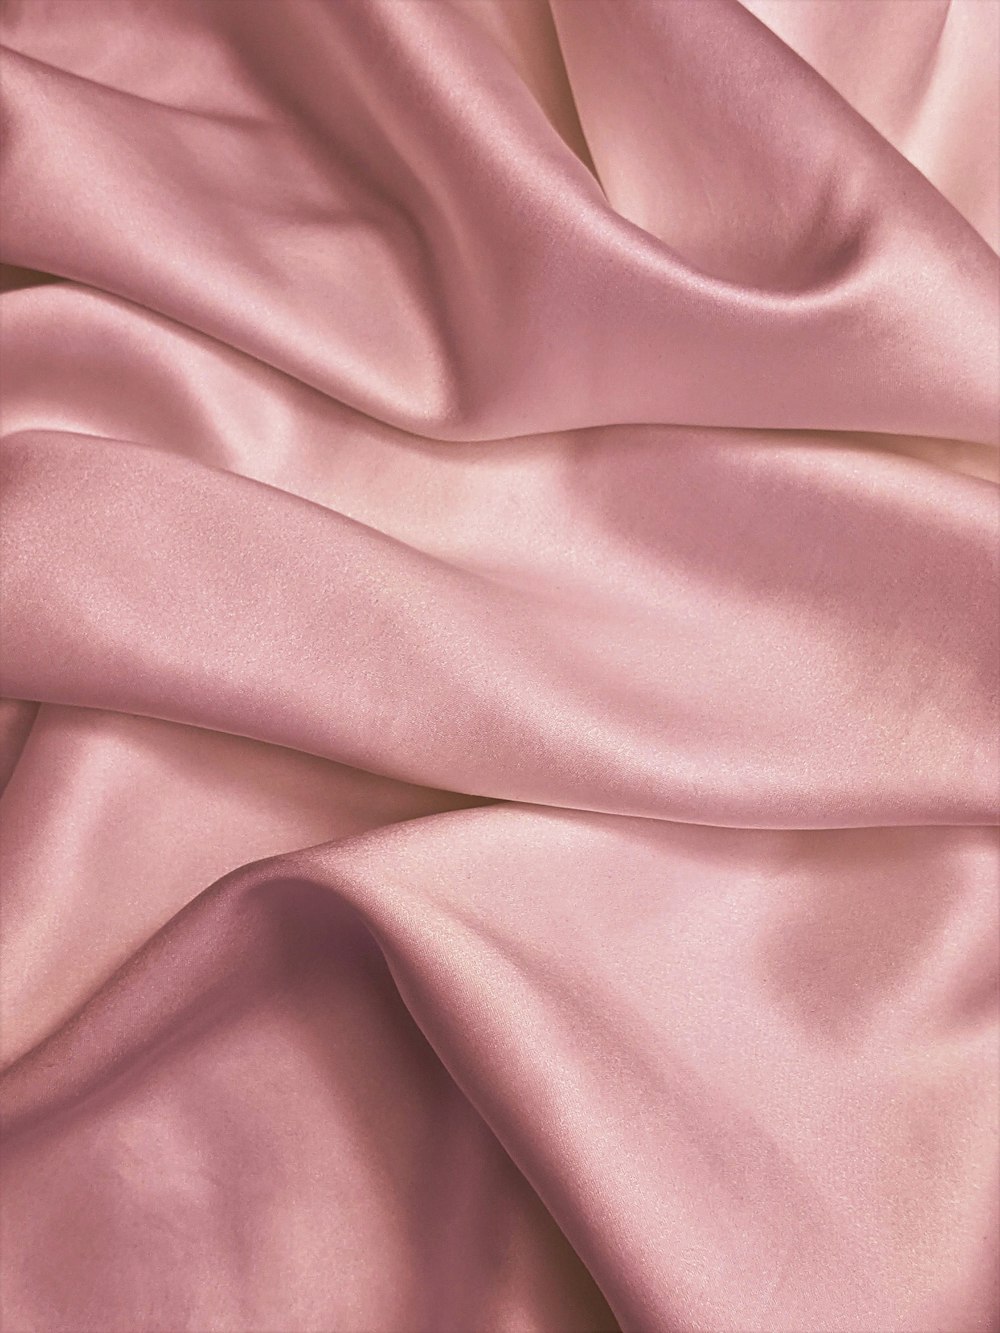 textil rosa en fotografía de cerca